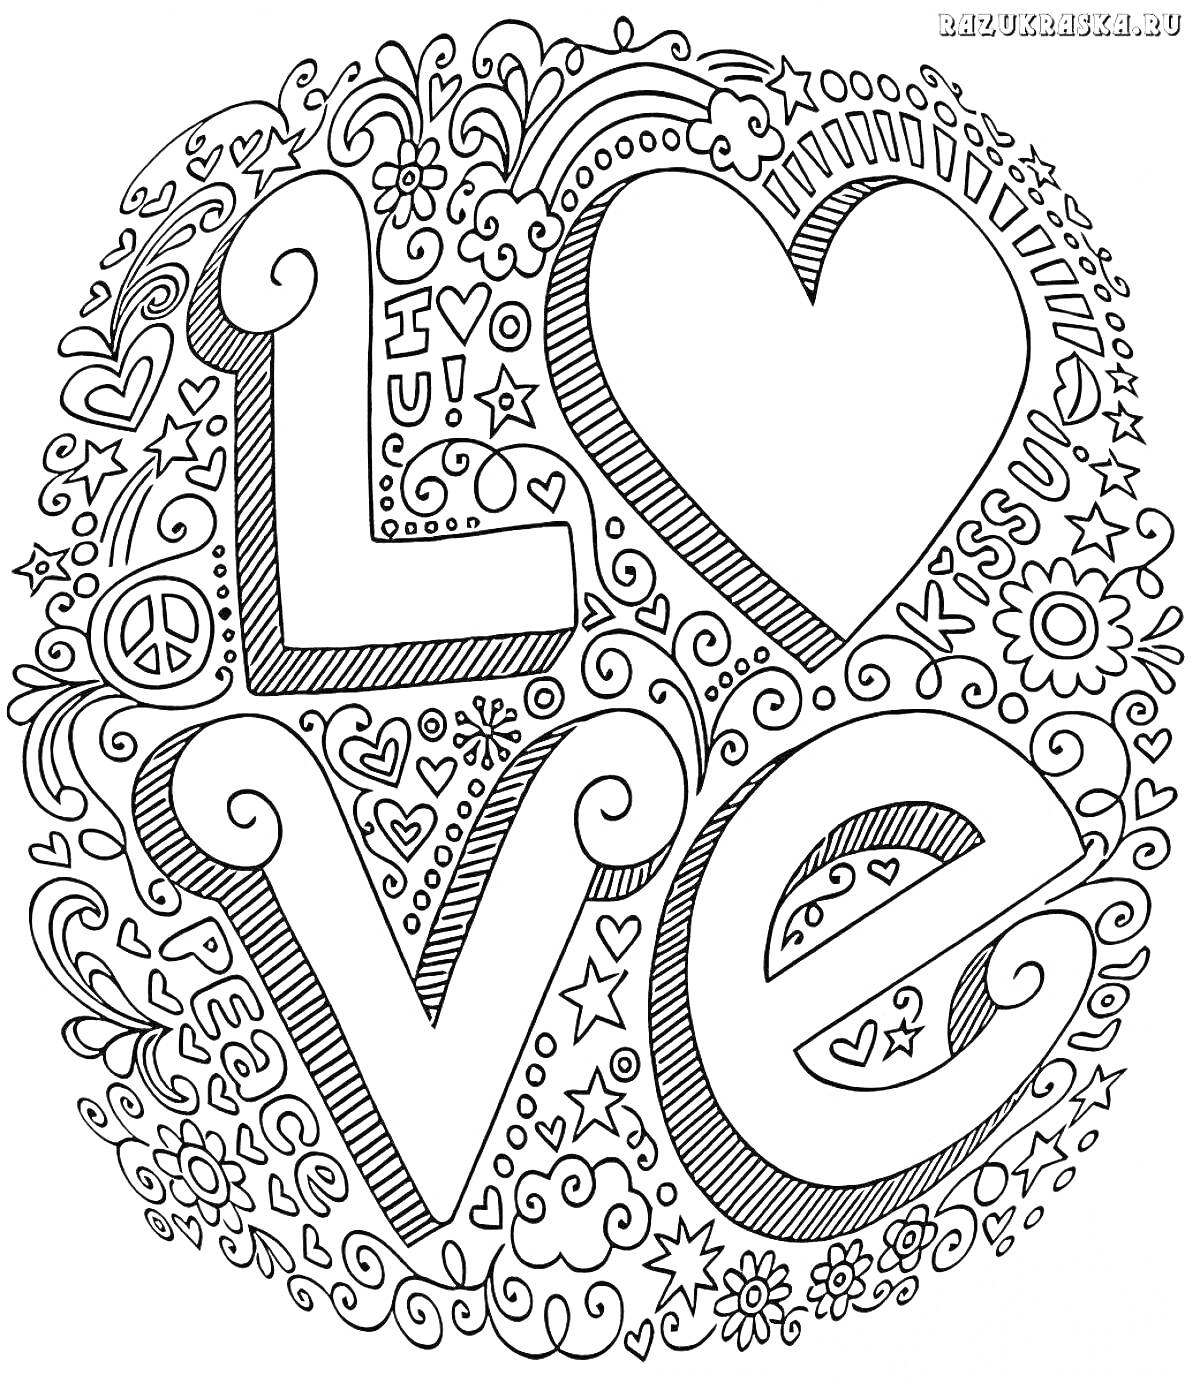 Надпись LOVE с сердцем и декоративными элементами (цветы, звезды, сердечки, жучки, завитки, облака, мир)